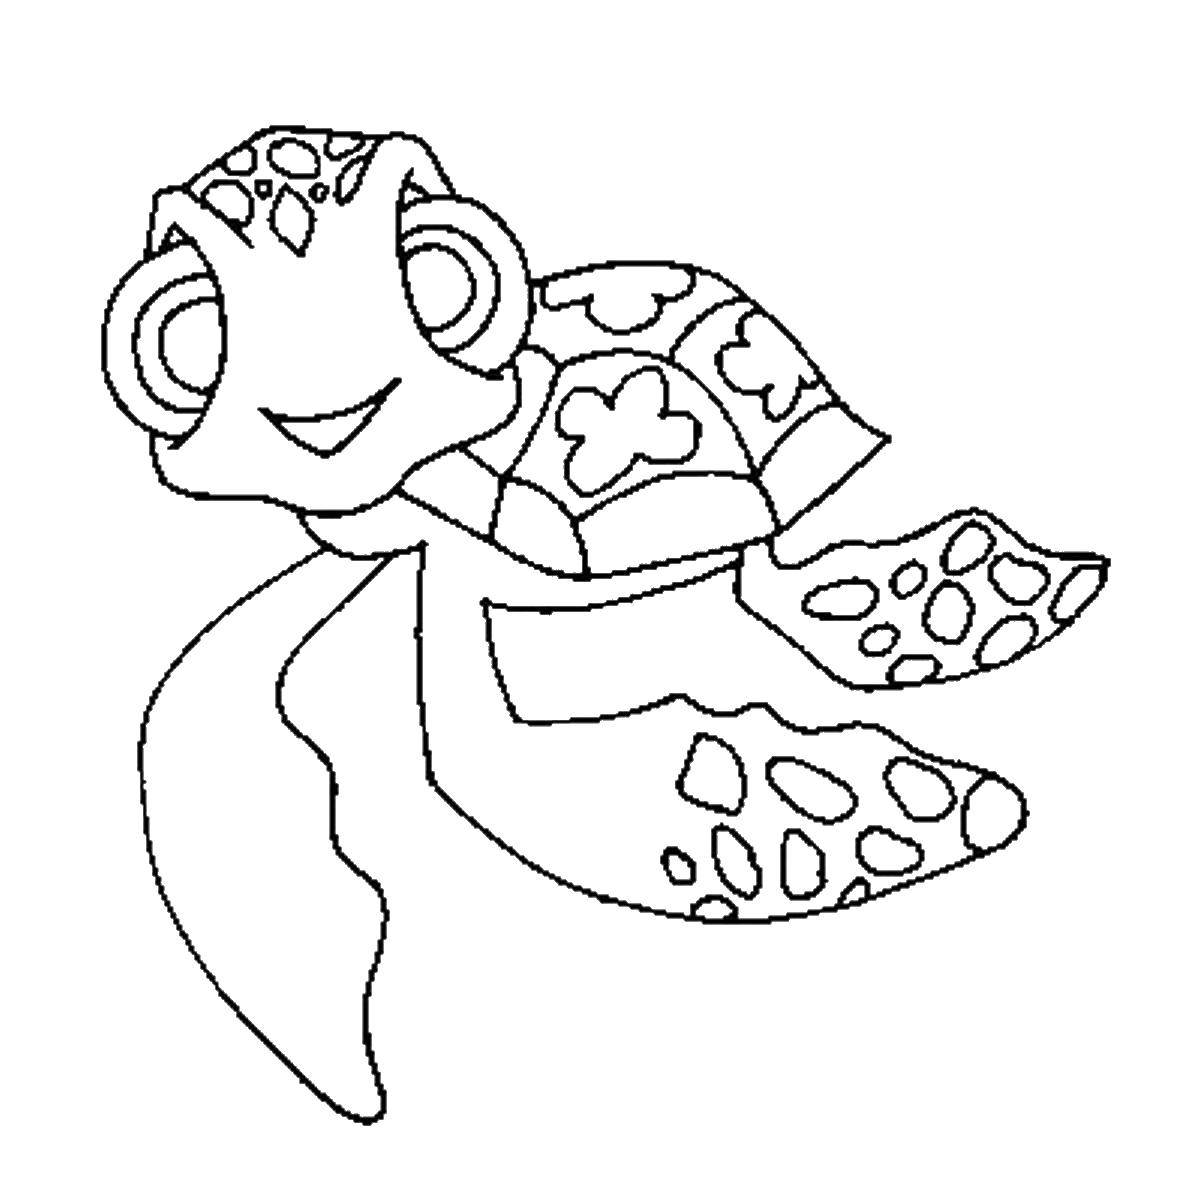 Coloring Sea turtle. Category sea turtle. Tags:  sea turtle.